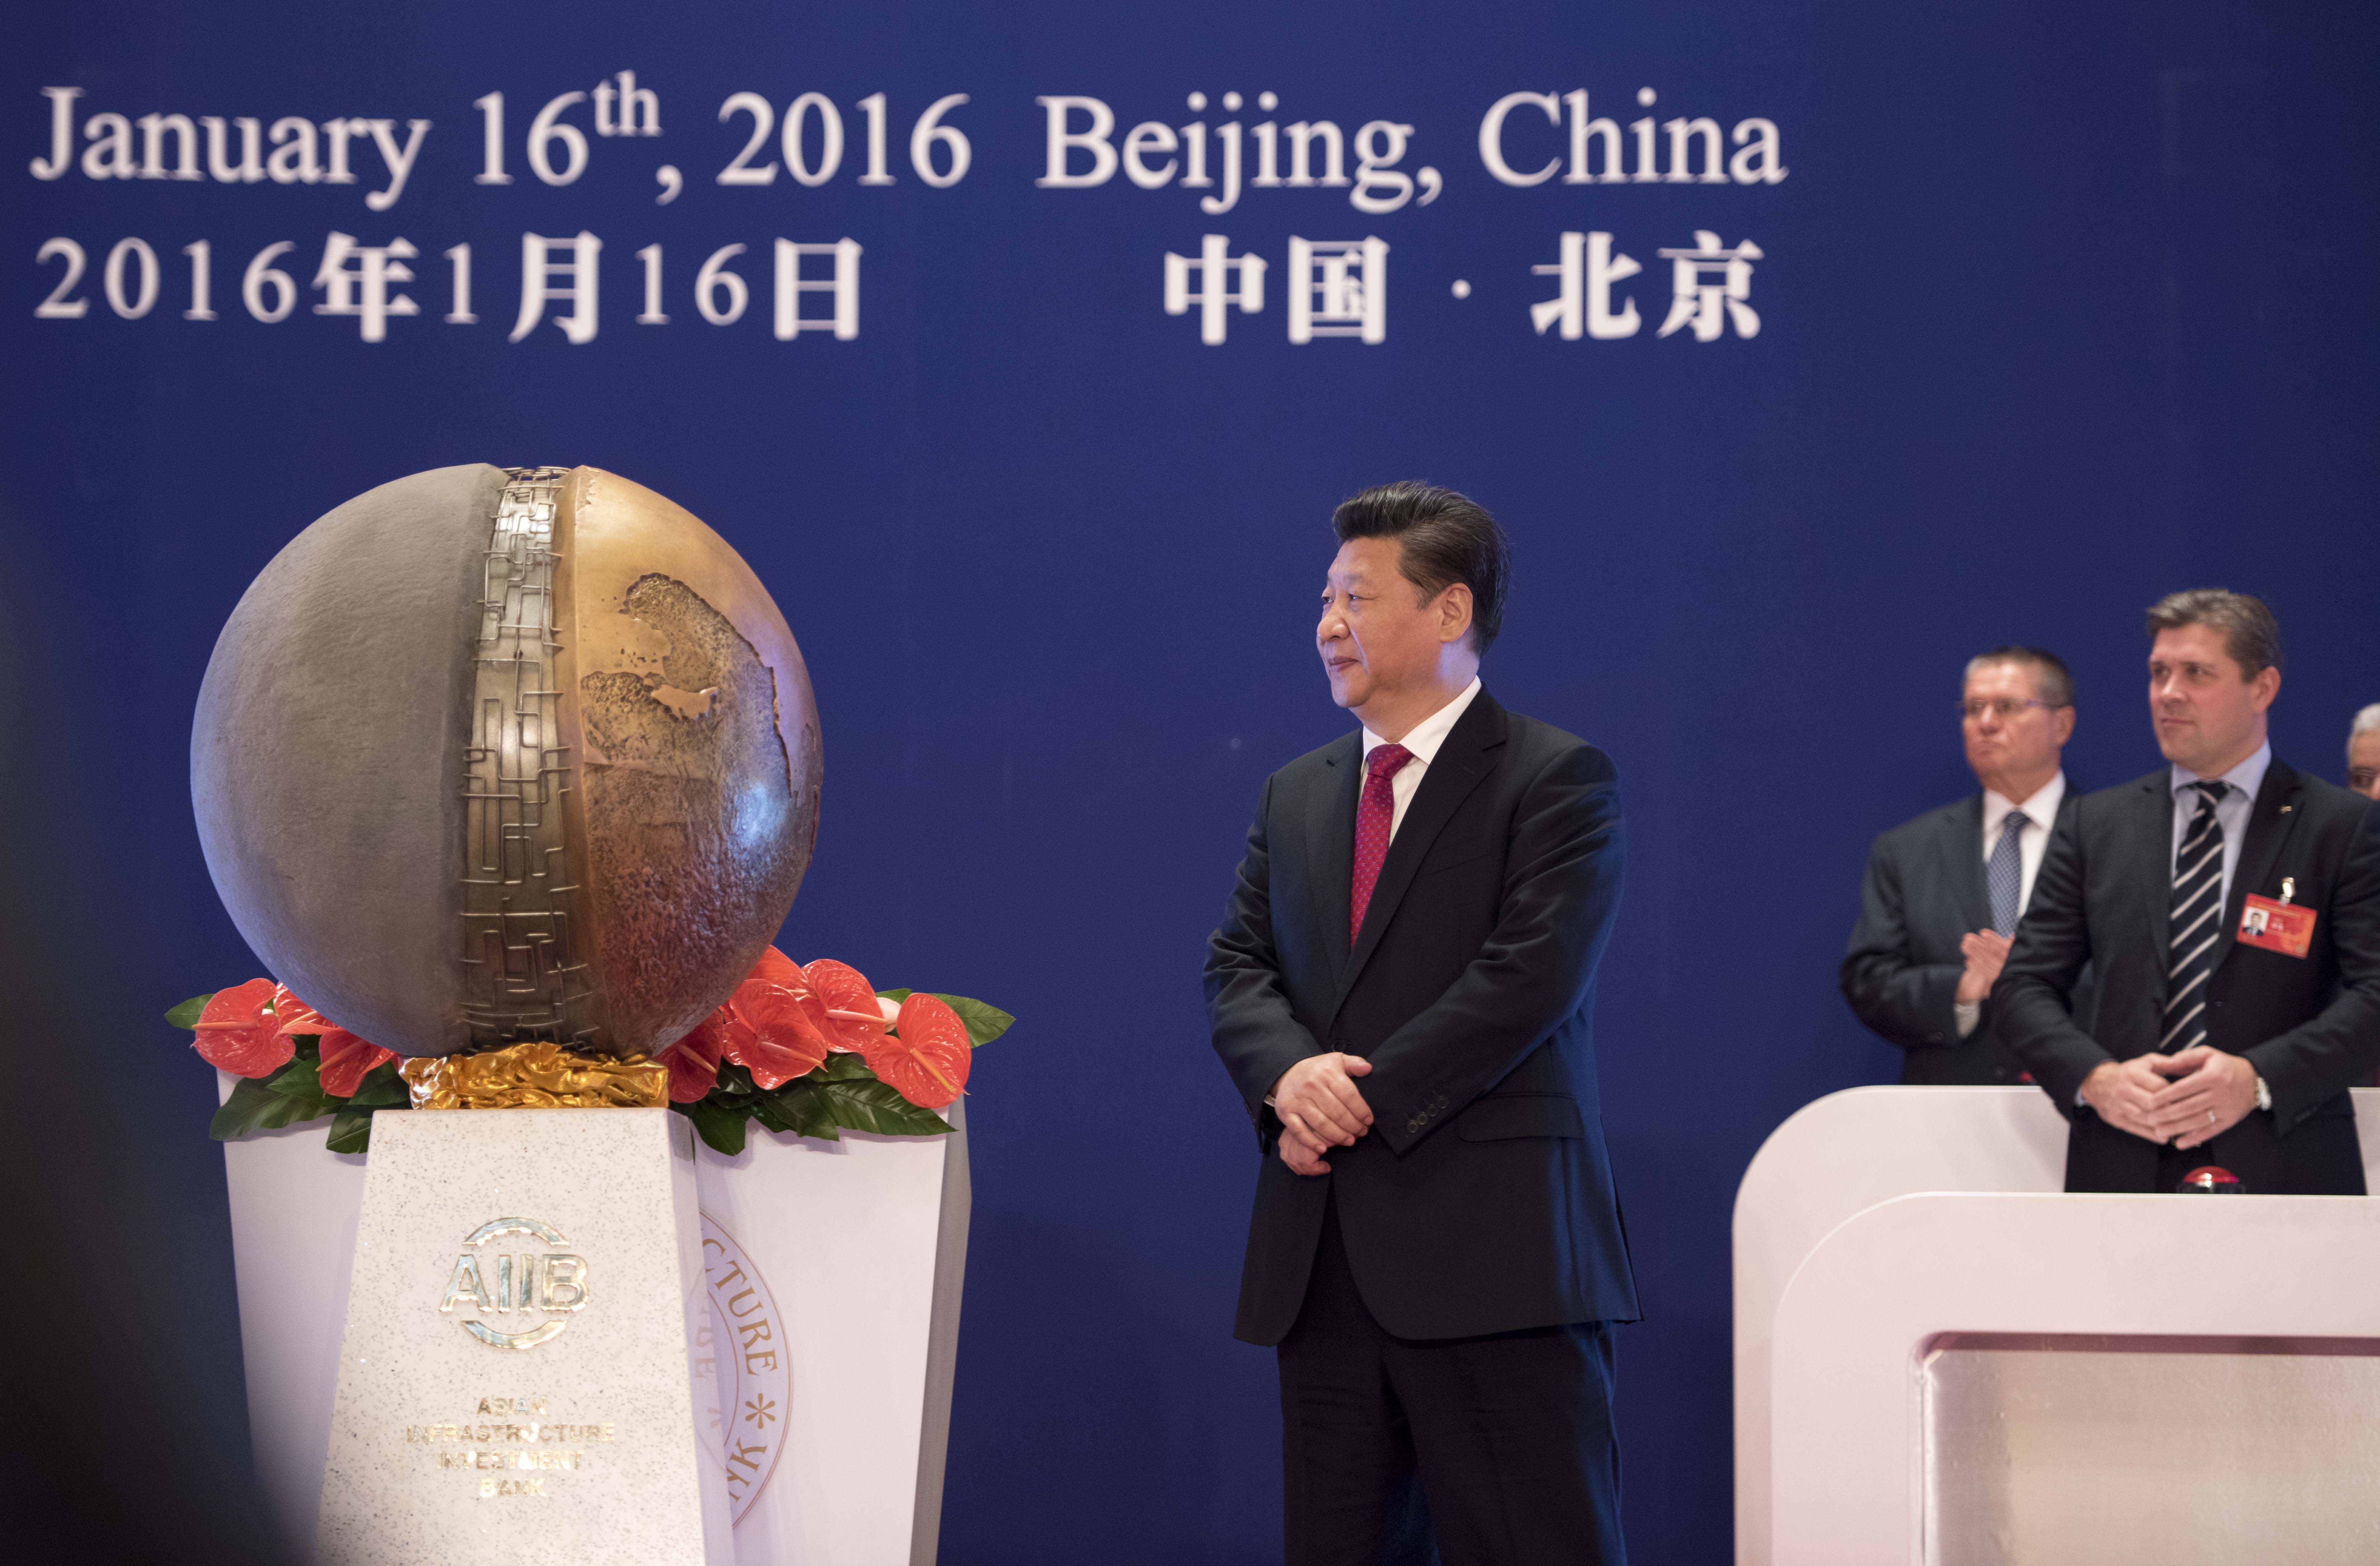 2016年1月16日，亚洲基础设施投资银行开业仪式在北京举行。习近平主席出席开业仪式并致辞。这是习近平为亚投行标志物“点石成金”揭幕。